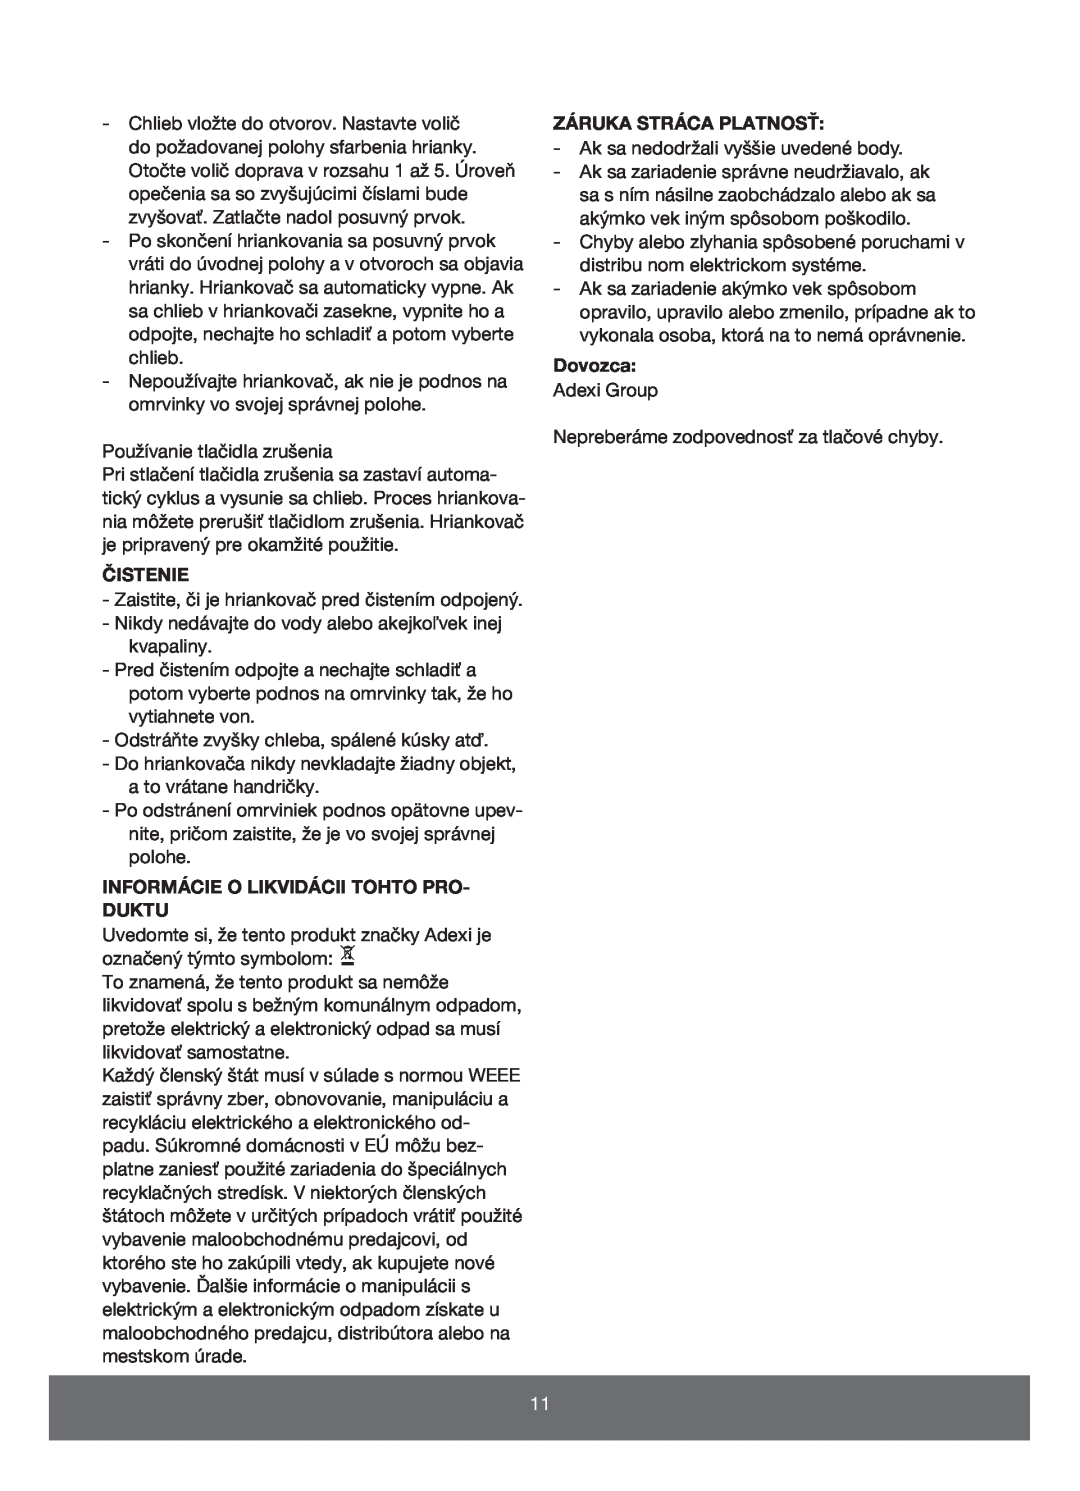 Melissa 643-109 manual Čistenie, Informácie O Likvidácii Tohto Pro- Duktu, Záruka Stráca Platnosť, Dovozca 